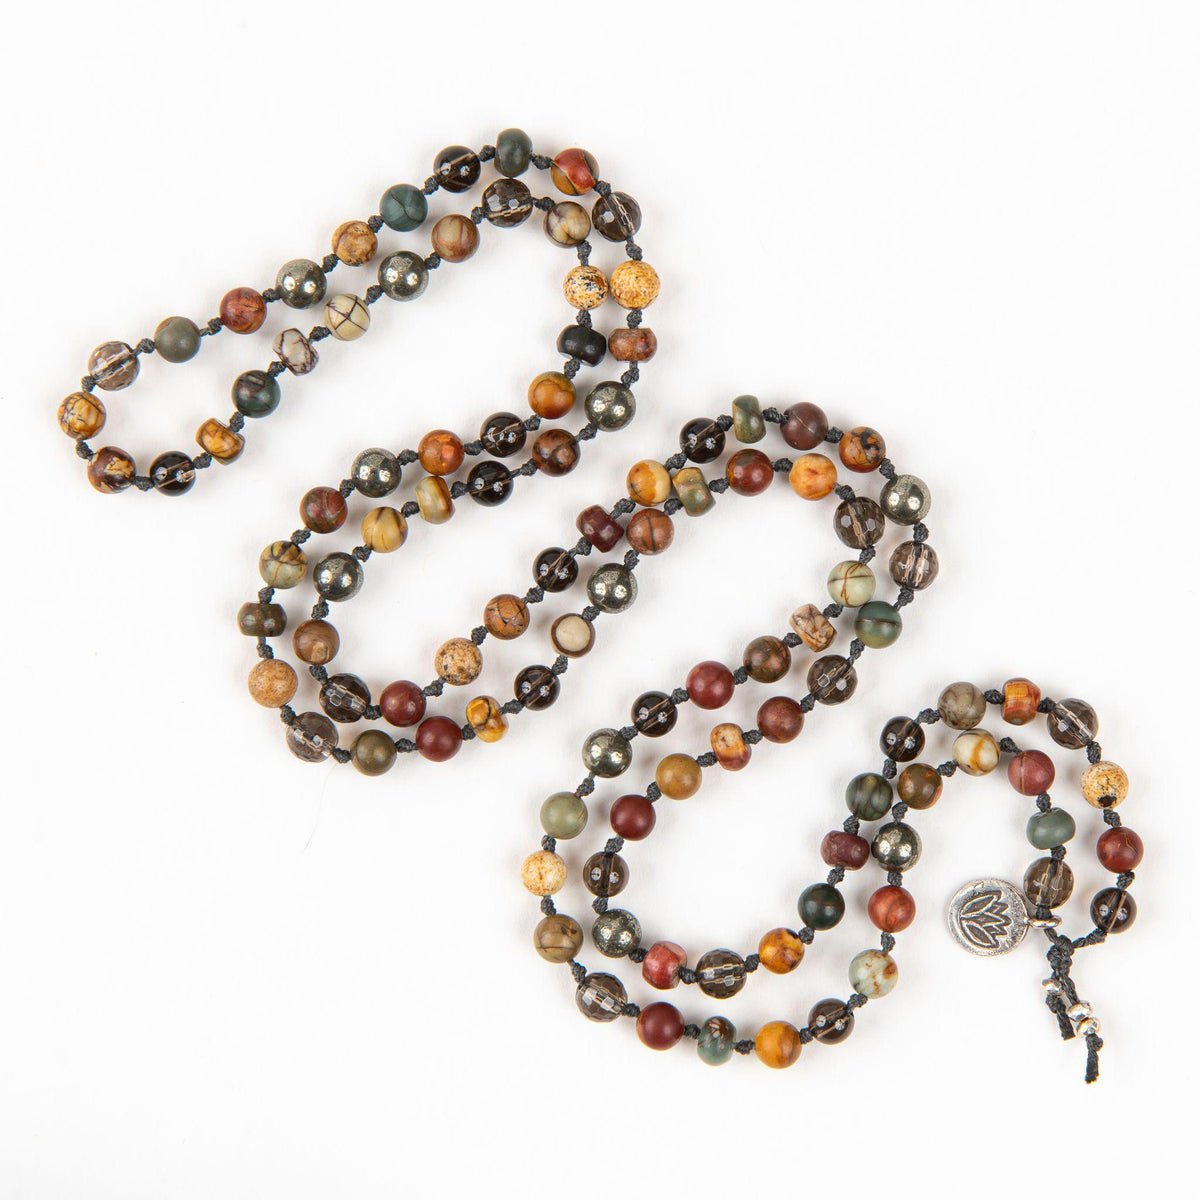 Mala Beads for Grounding with Smoky Quartz and Pyrite Merakalapa Malas